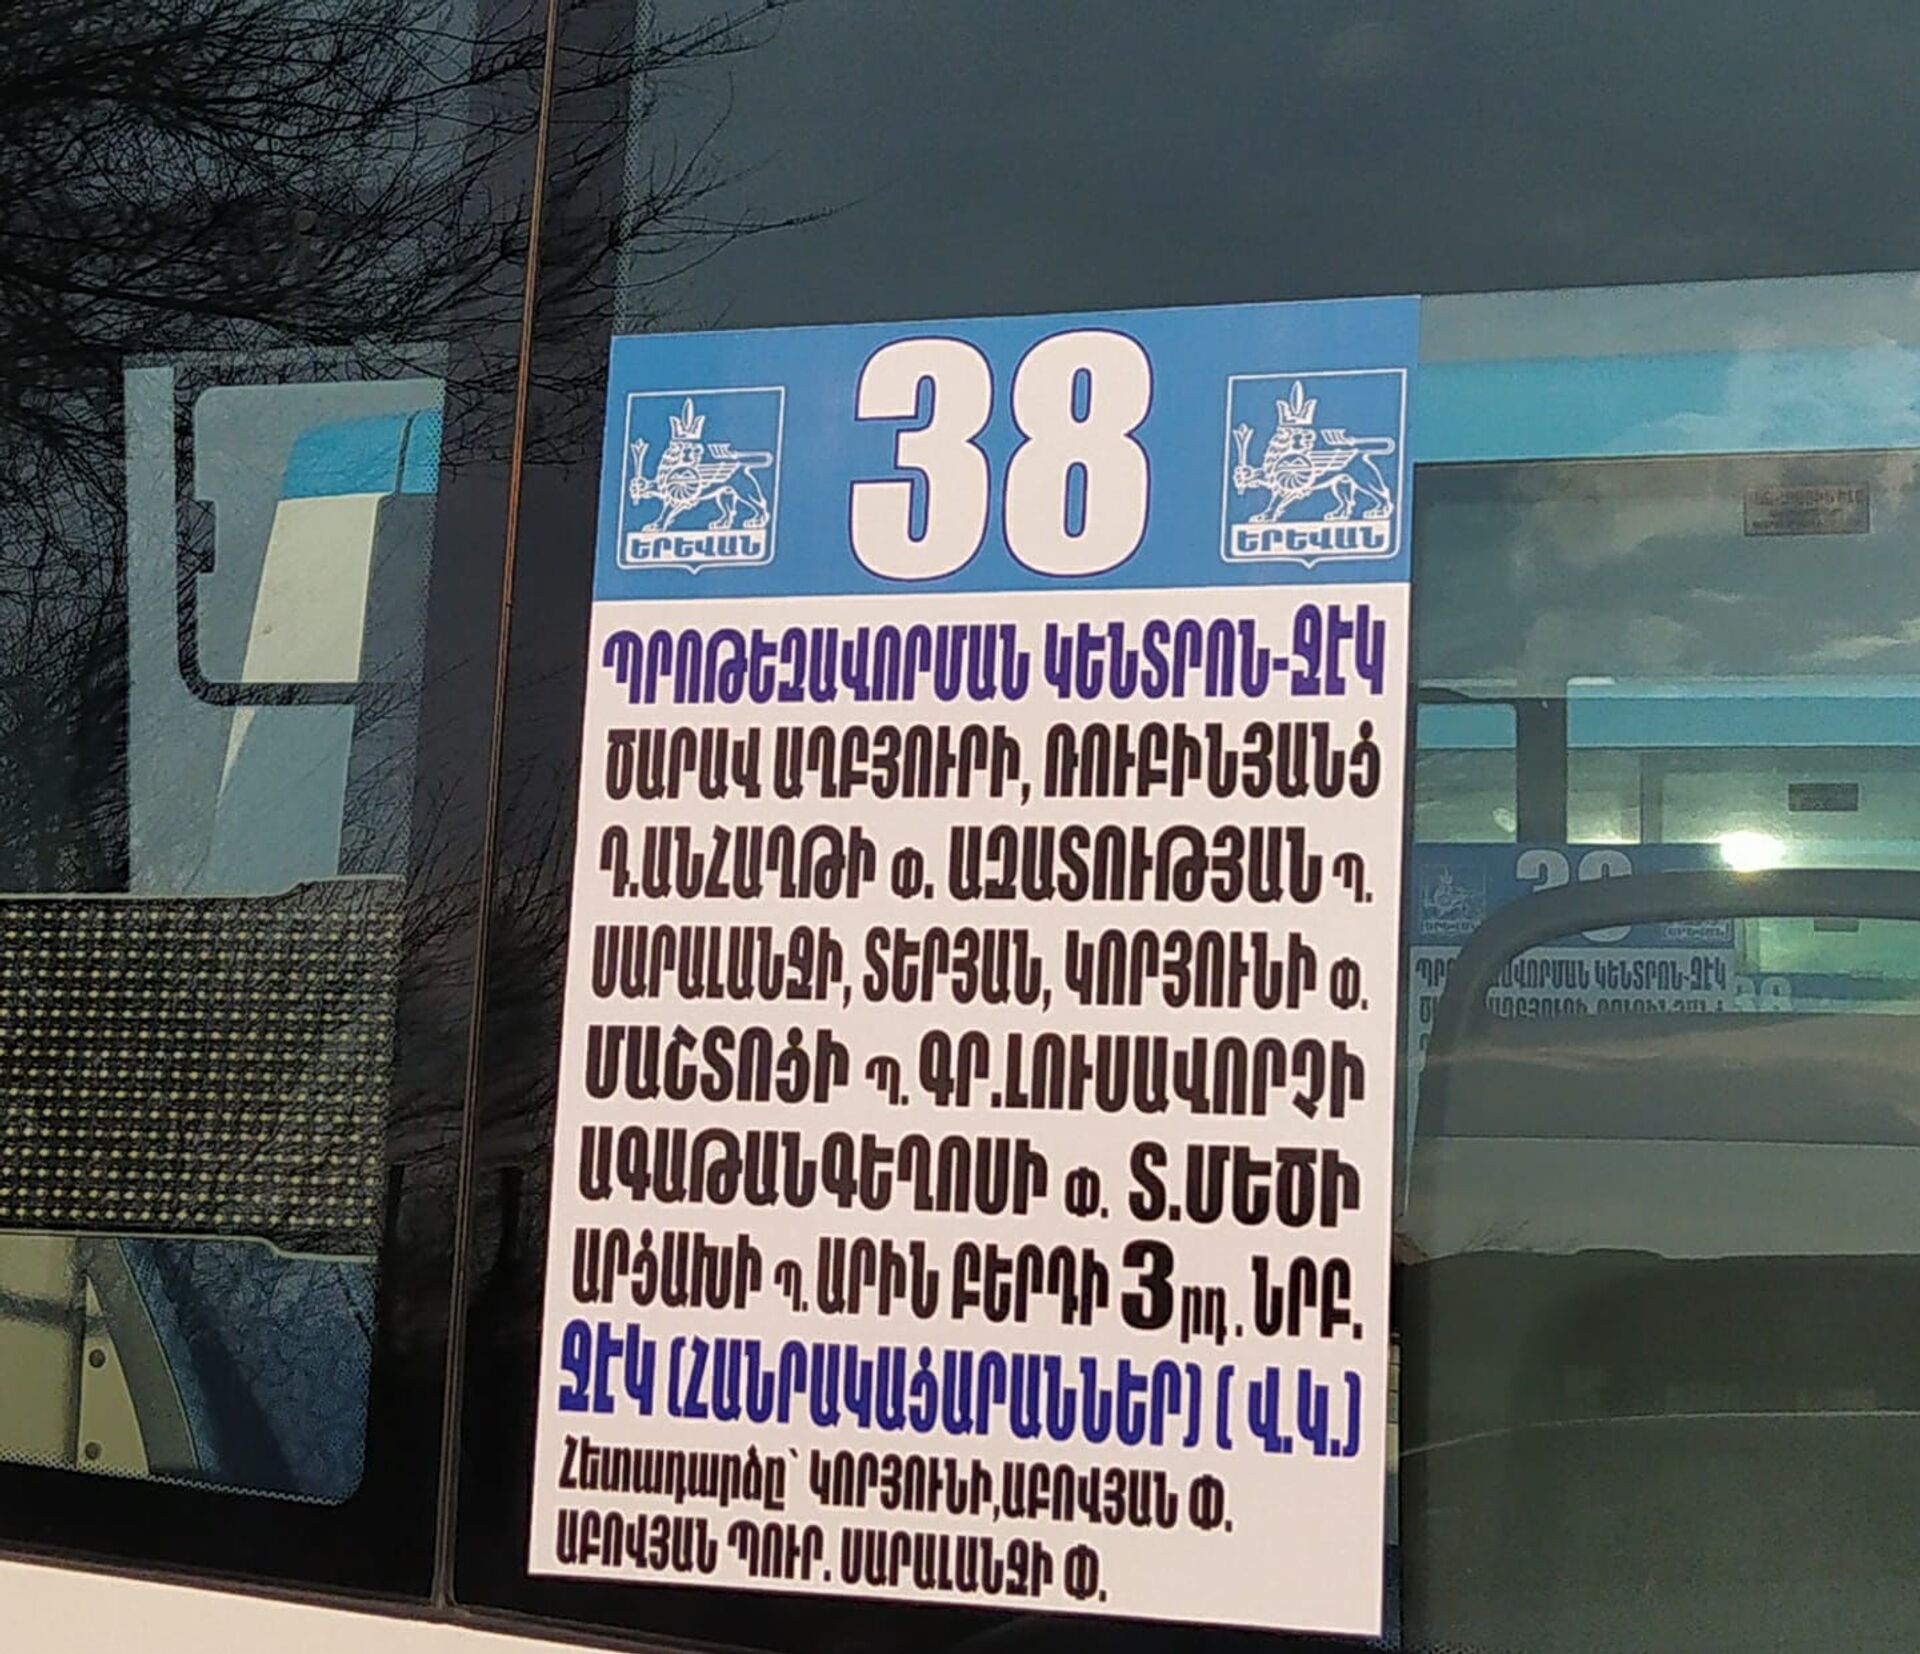 11 новых микроавтобусов заработают в Ереване : мэрия показала, как они выглядят - Sputnik Армения, 1920, 14.02.2021